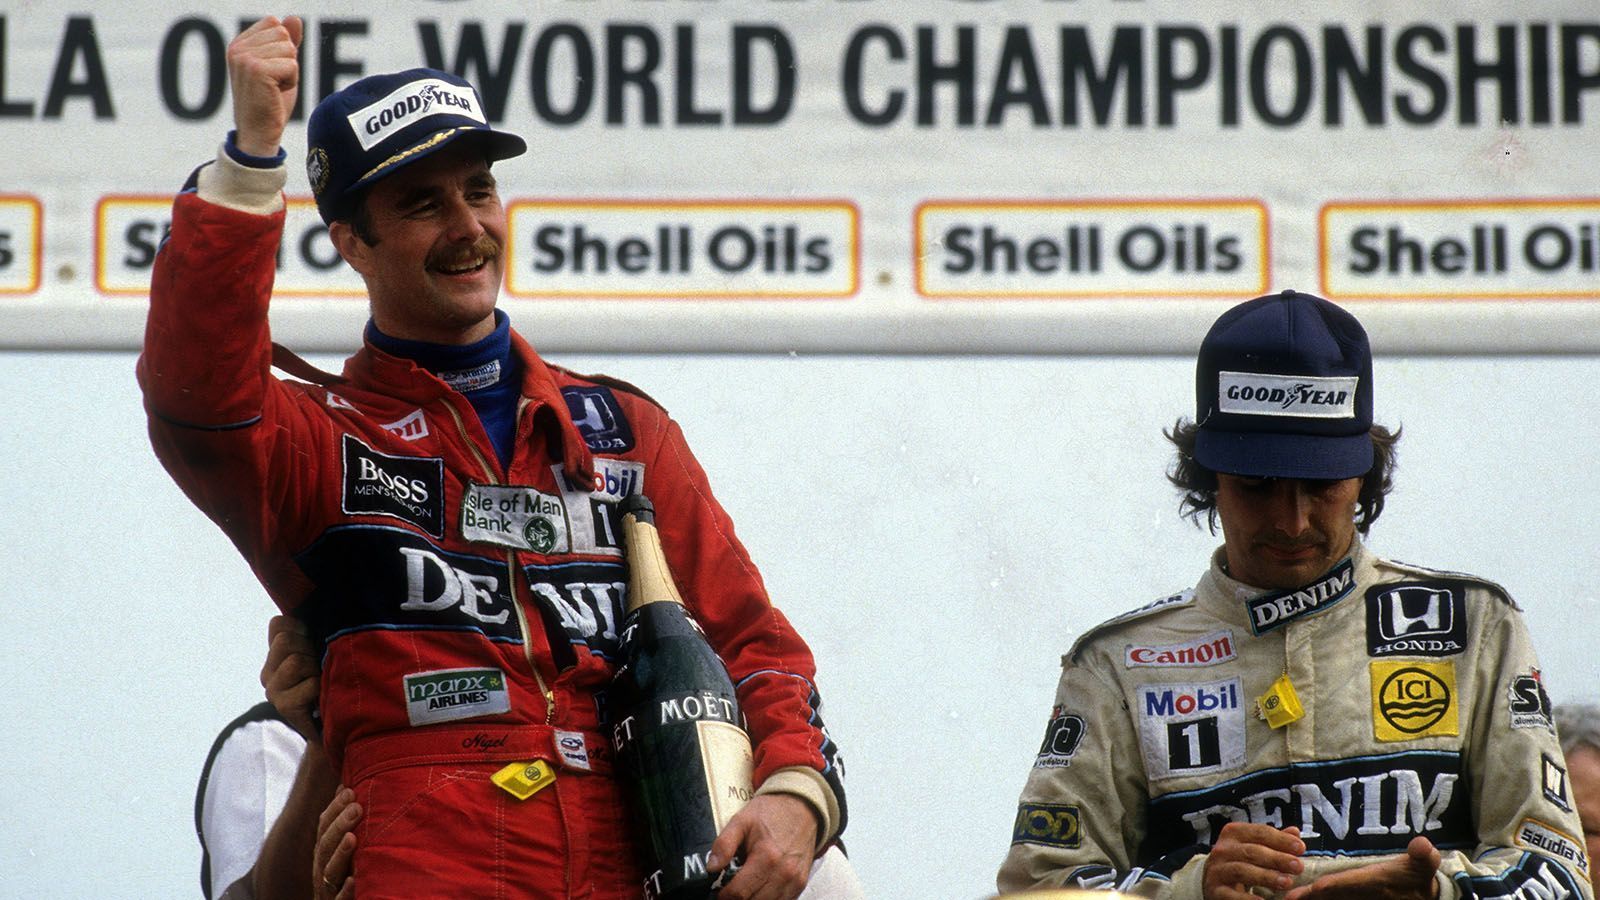 
                <strong>Nelson Piquet gegen Nigel Mansell (Williams)</strong><br>
                Als Nelson Piquet 1986, als zweifacher Weltmeister, zu Williams kam, glaubte er im Team die Nummer eins zu sein. Doch der Brasilianer hatte die Rechnung ohne Nigel Mansell gemacht. Der Brite konnte während der Saison einen Sieg mehr als sein Kontrahent einfahren und wurde Vize-Weltmeister. Ein Jahr später bekleidete er erneut den zweiten Platz der Fahrerwertung. Zu Mansells Unmut schnappte sich Piquet 1987 aber seinen dritten Titel und verließ das Team daraufhin.
              